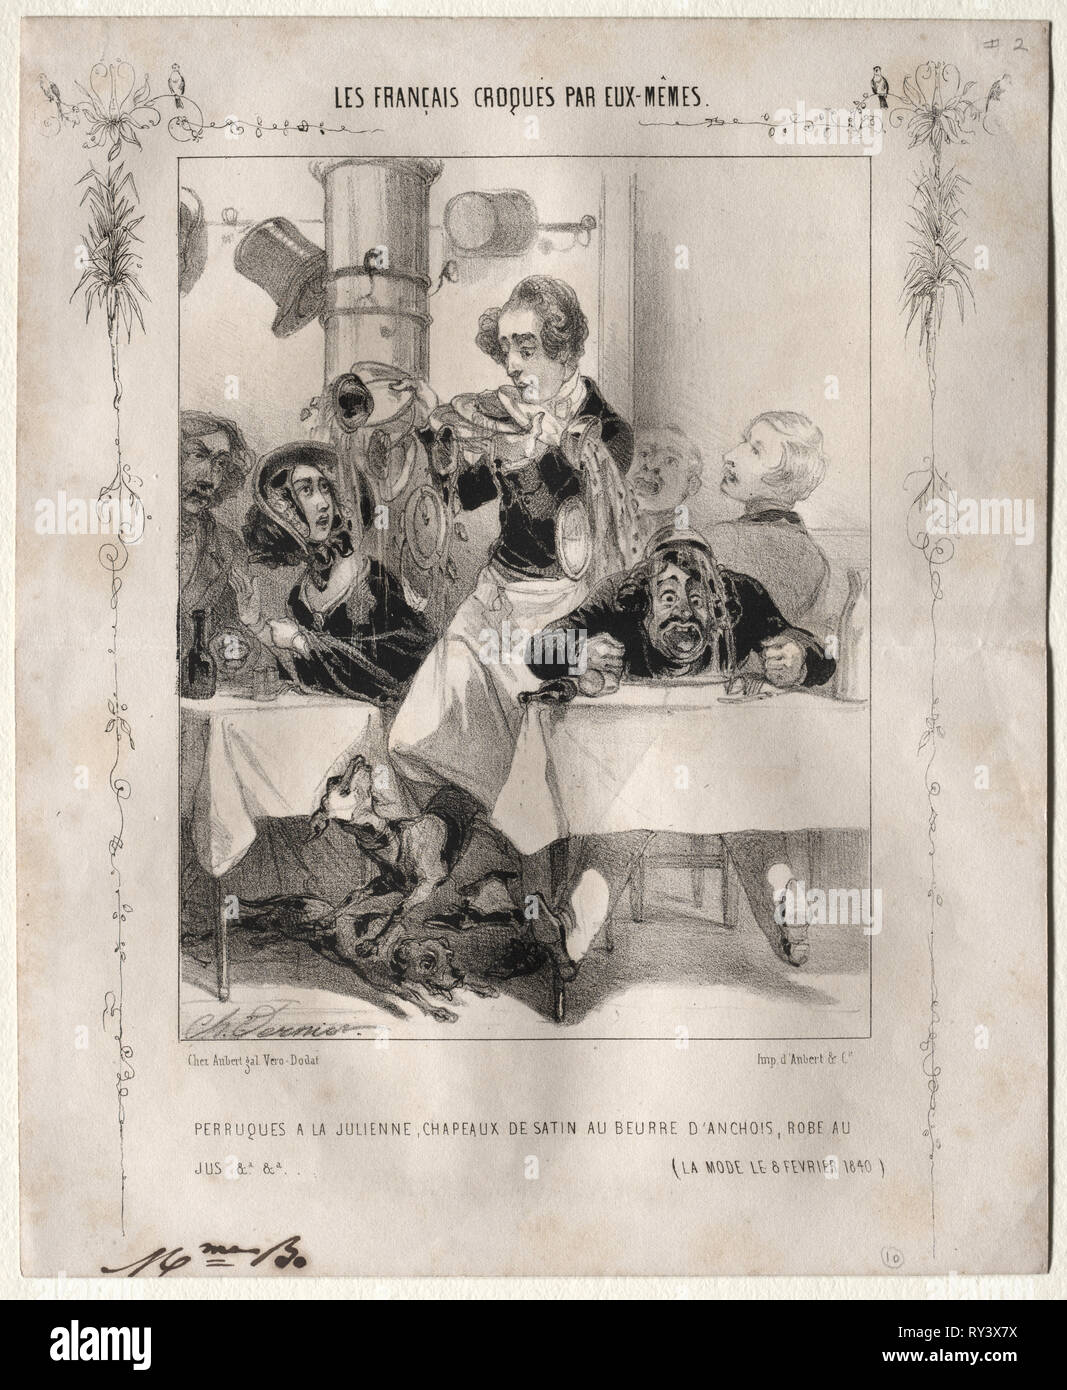 Les Français croquès par eux-mêmes:  Perruques a la Julienne, Chapeaux de satin au beurre d'anchois, robe au jus, 1840. Charles Vernier (French, 1831-1887). Lithograph Stock Photo